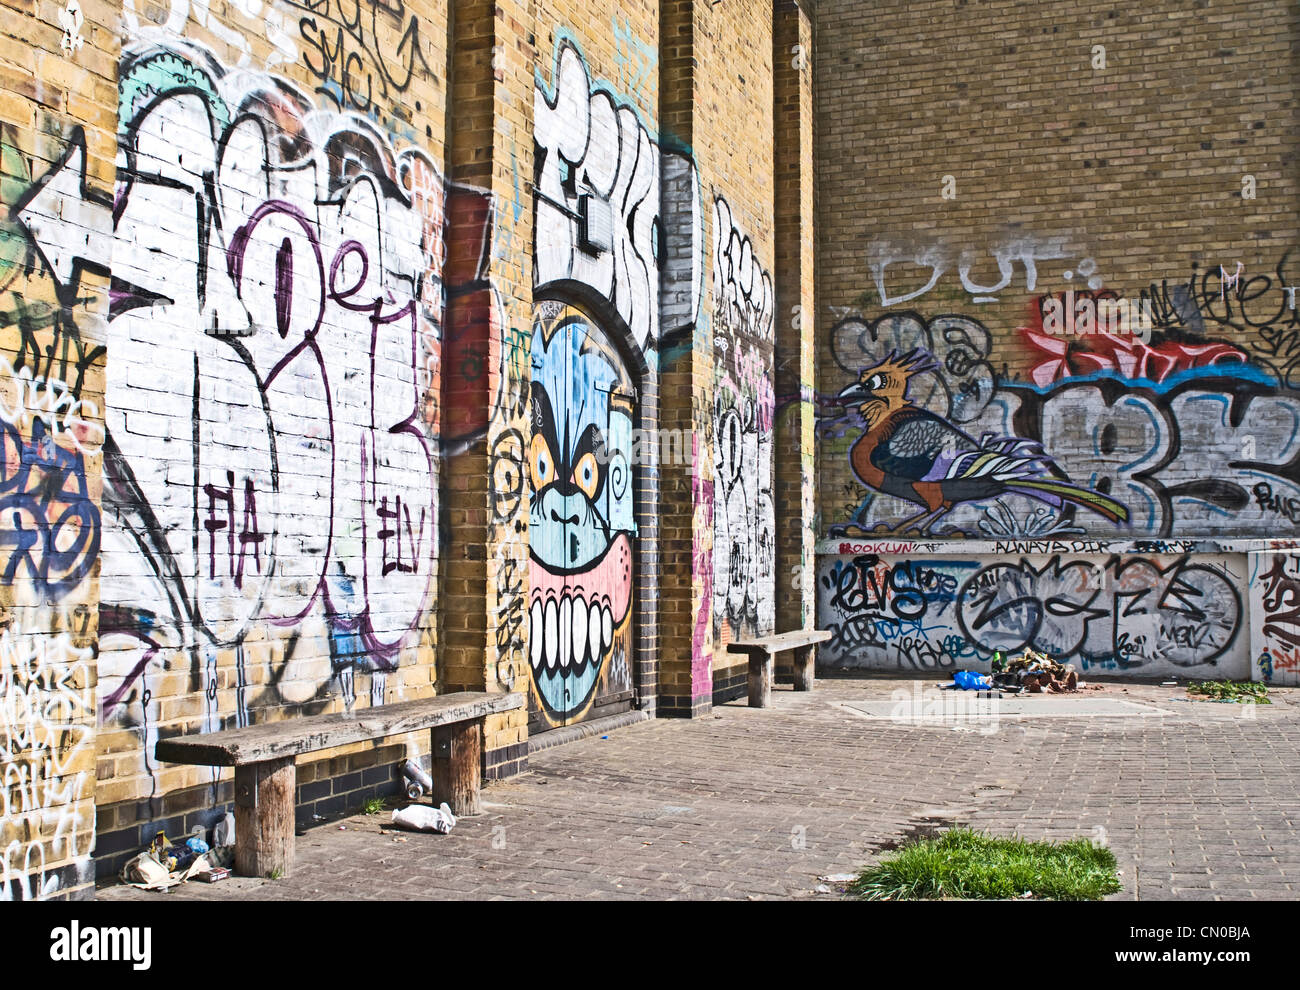 London graffiti and street art Stock Photo